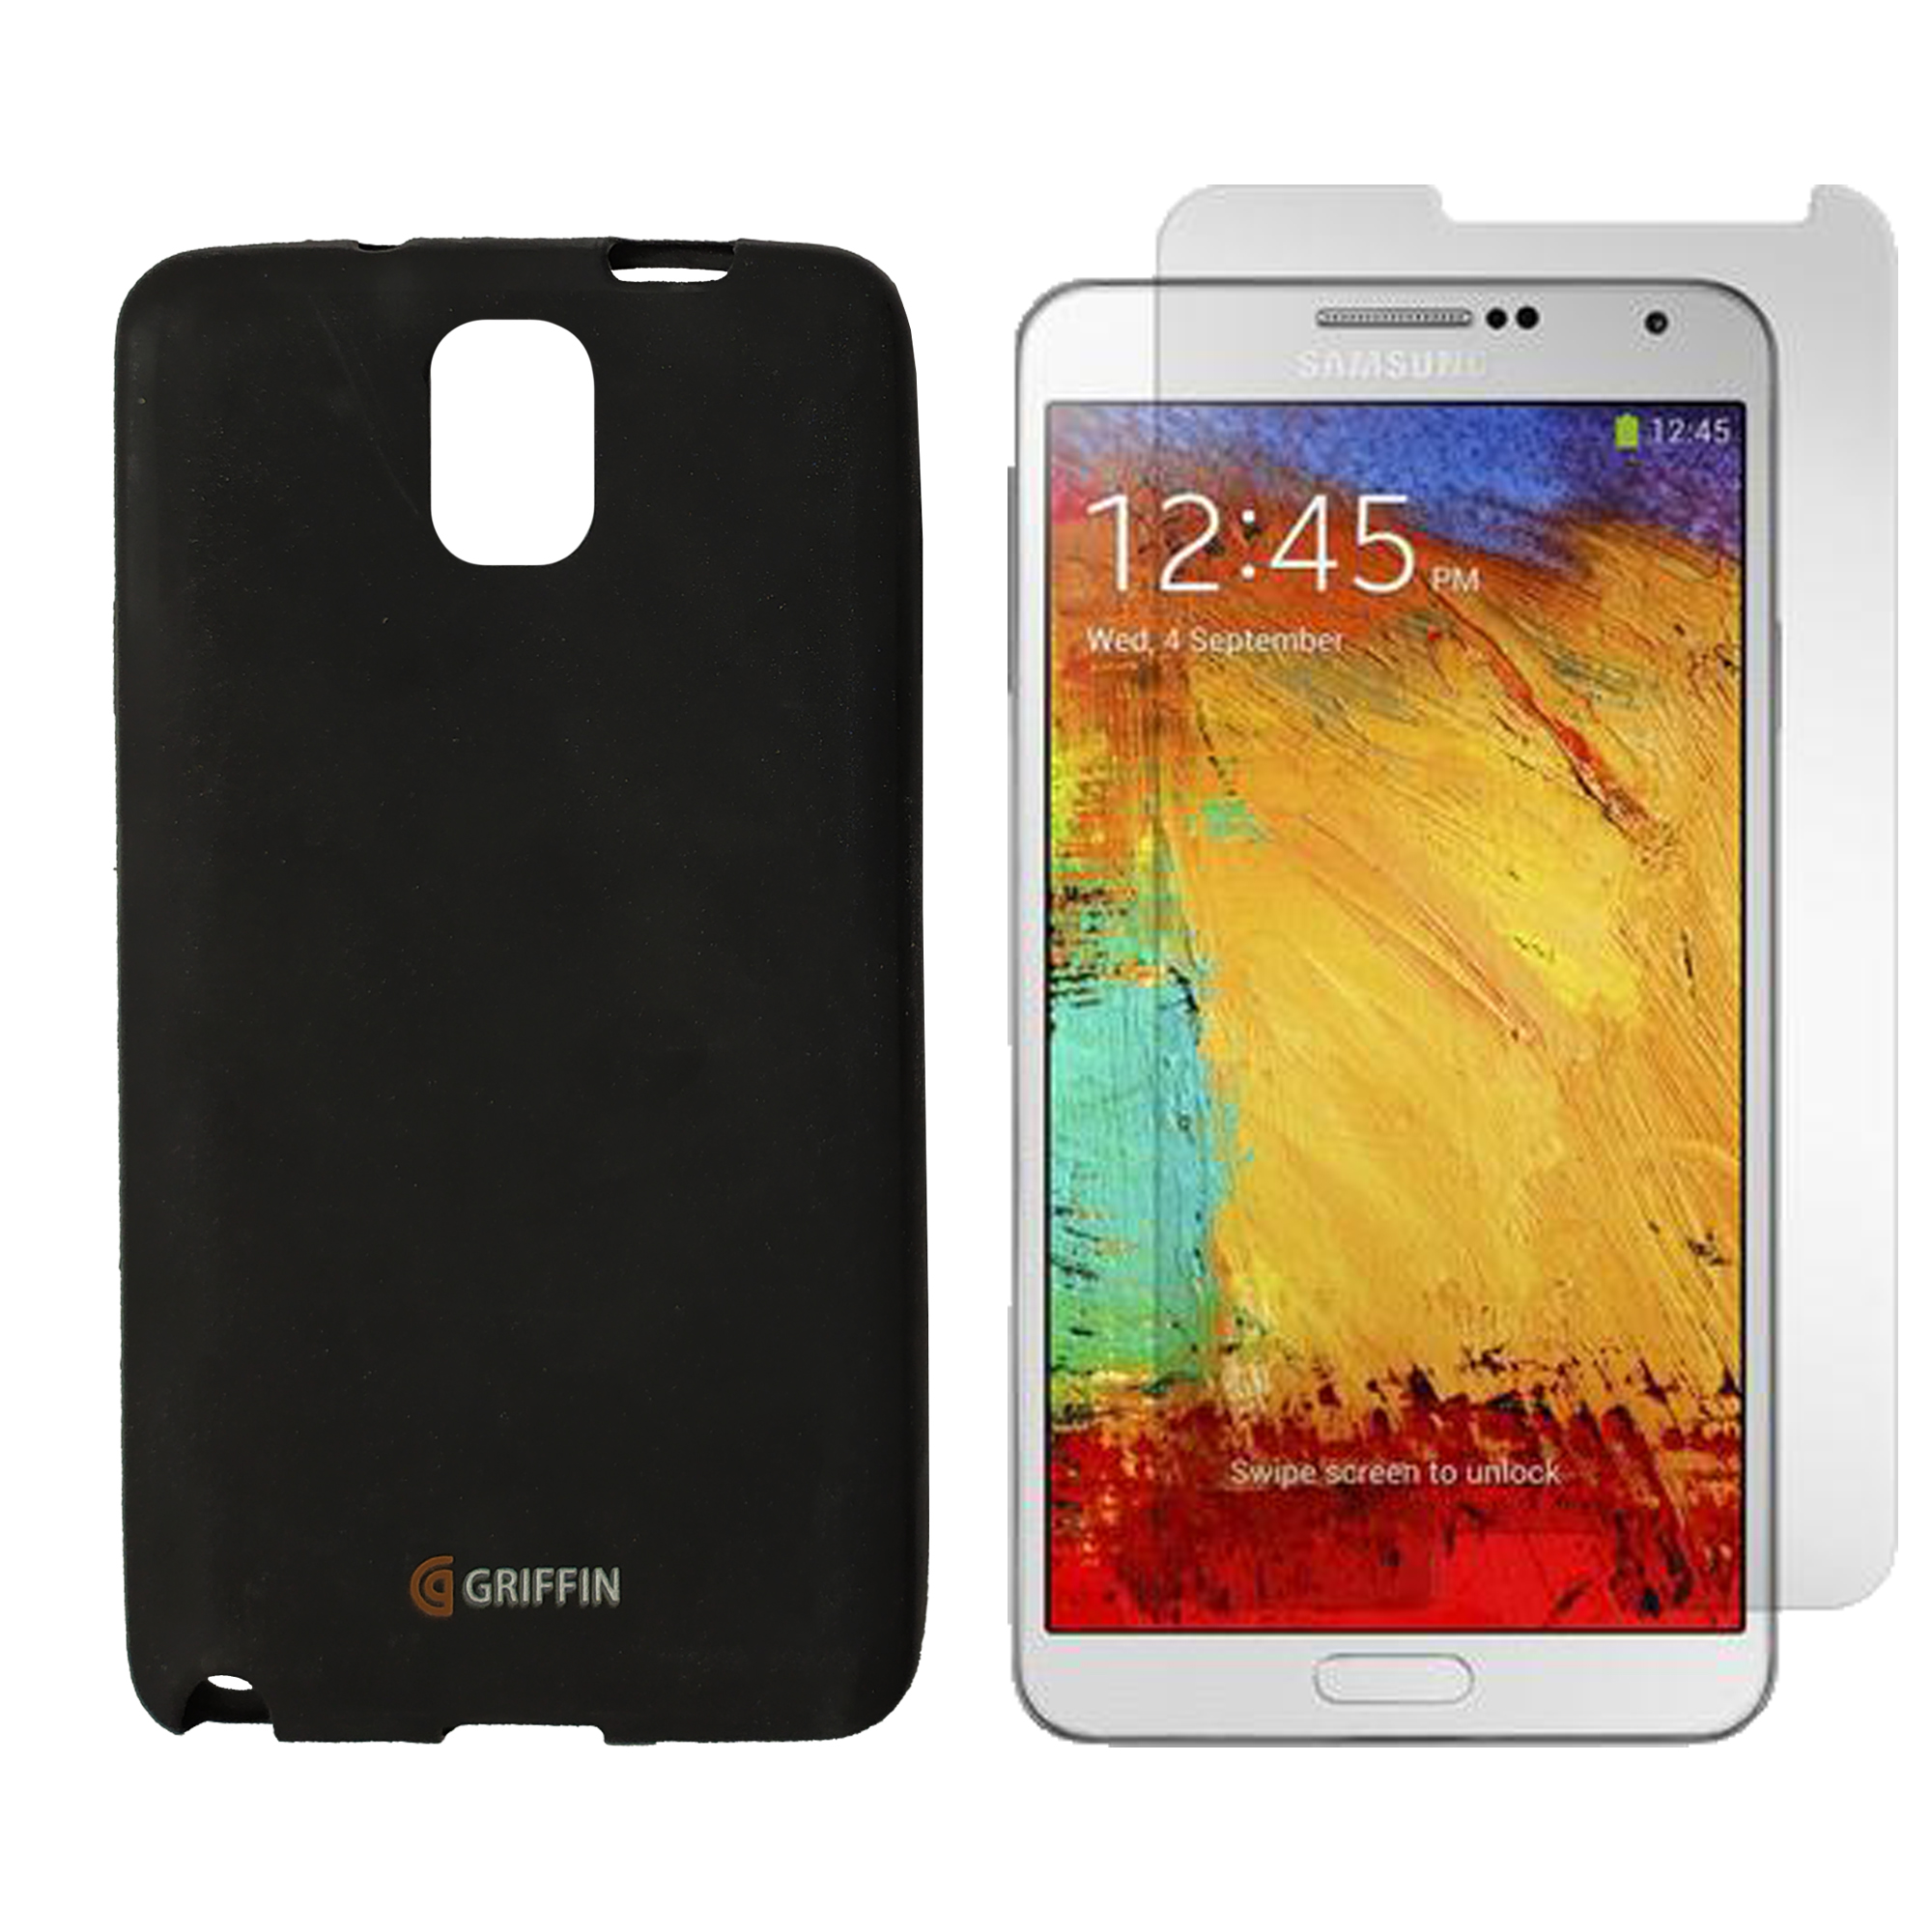 کاور گریفین کد Mc-08 مناسب برای گوشی موبایل سامسونگ Galaxy Note 3 به همراه محافظ صفحه نمایش